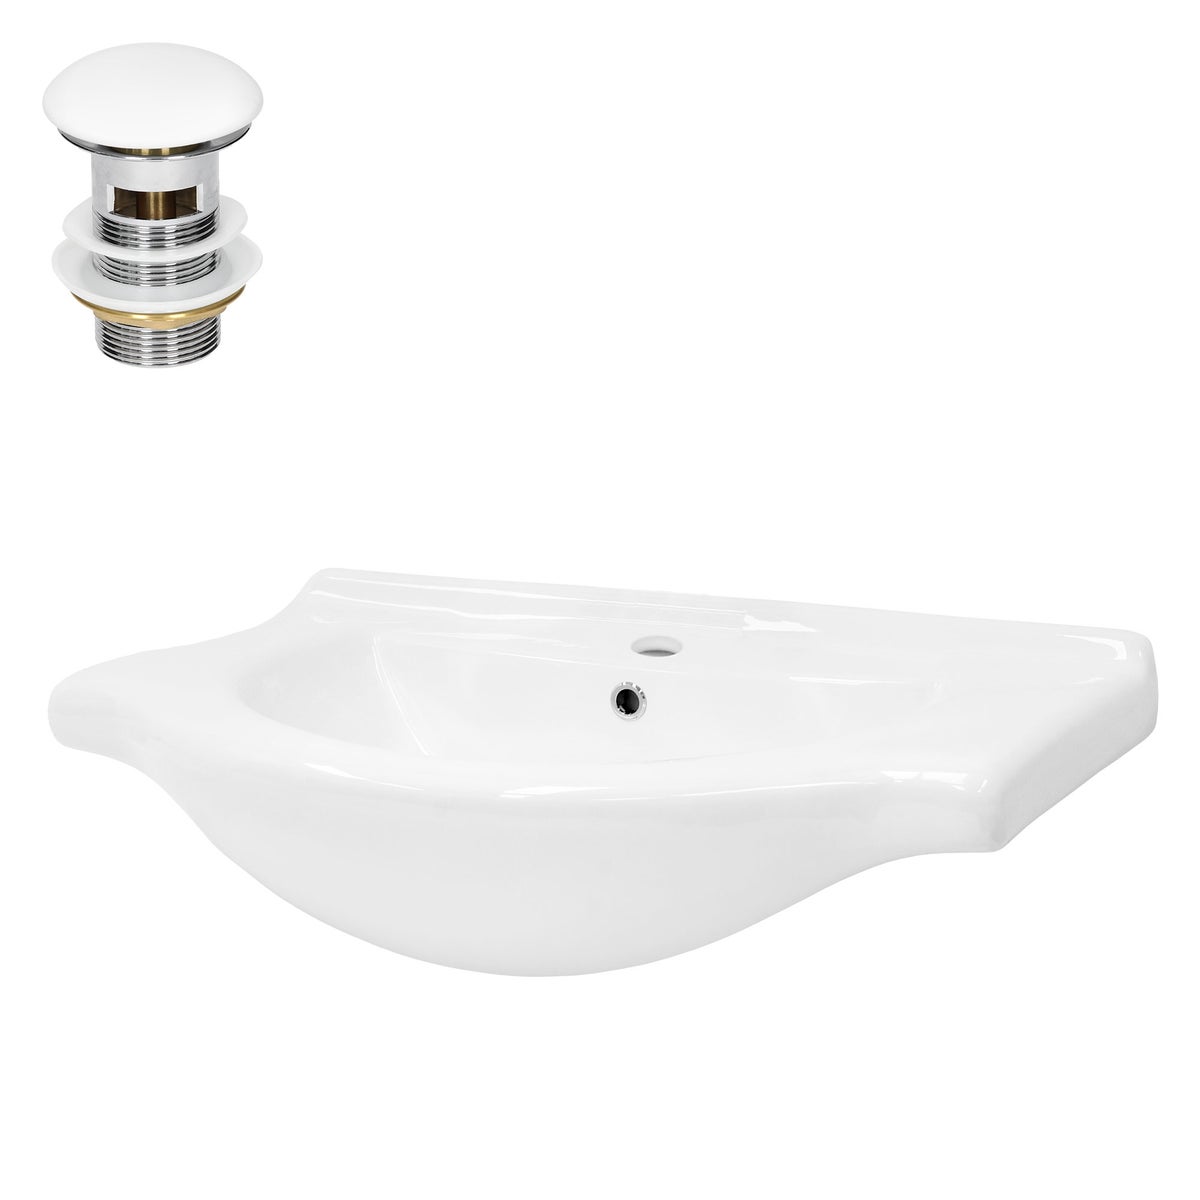 ML-Design Waschbecken aus Keramik Weiß 77x21,5x51,5 cm inkl. Ablaufgarnitur, Einbauwaschbecken mit Überlauf, Aufsatzwaschbecken Einbauwaschtisch Waschschale Waschplatz Handwaschbecken, für Badezimmer